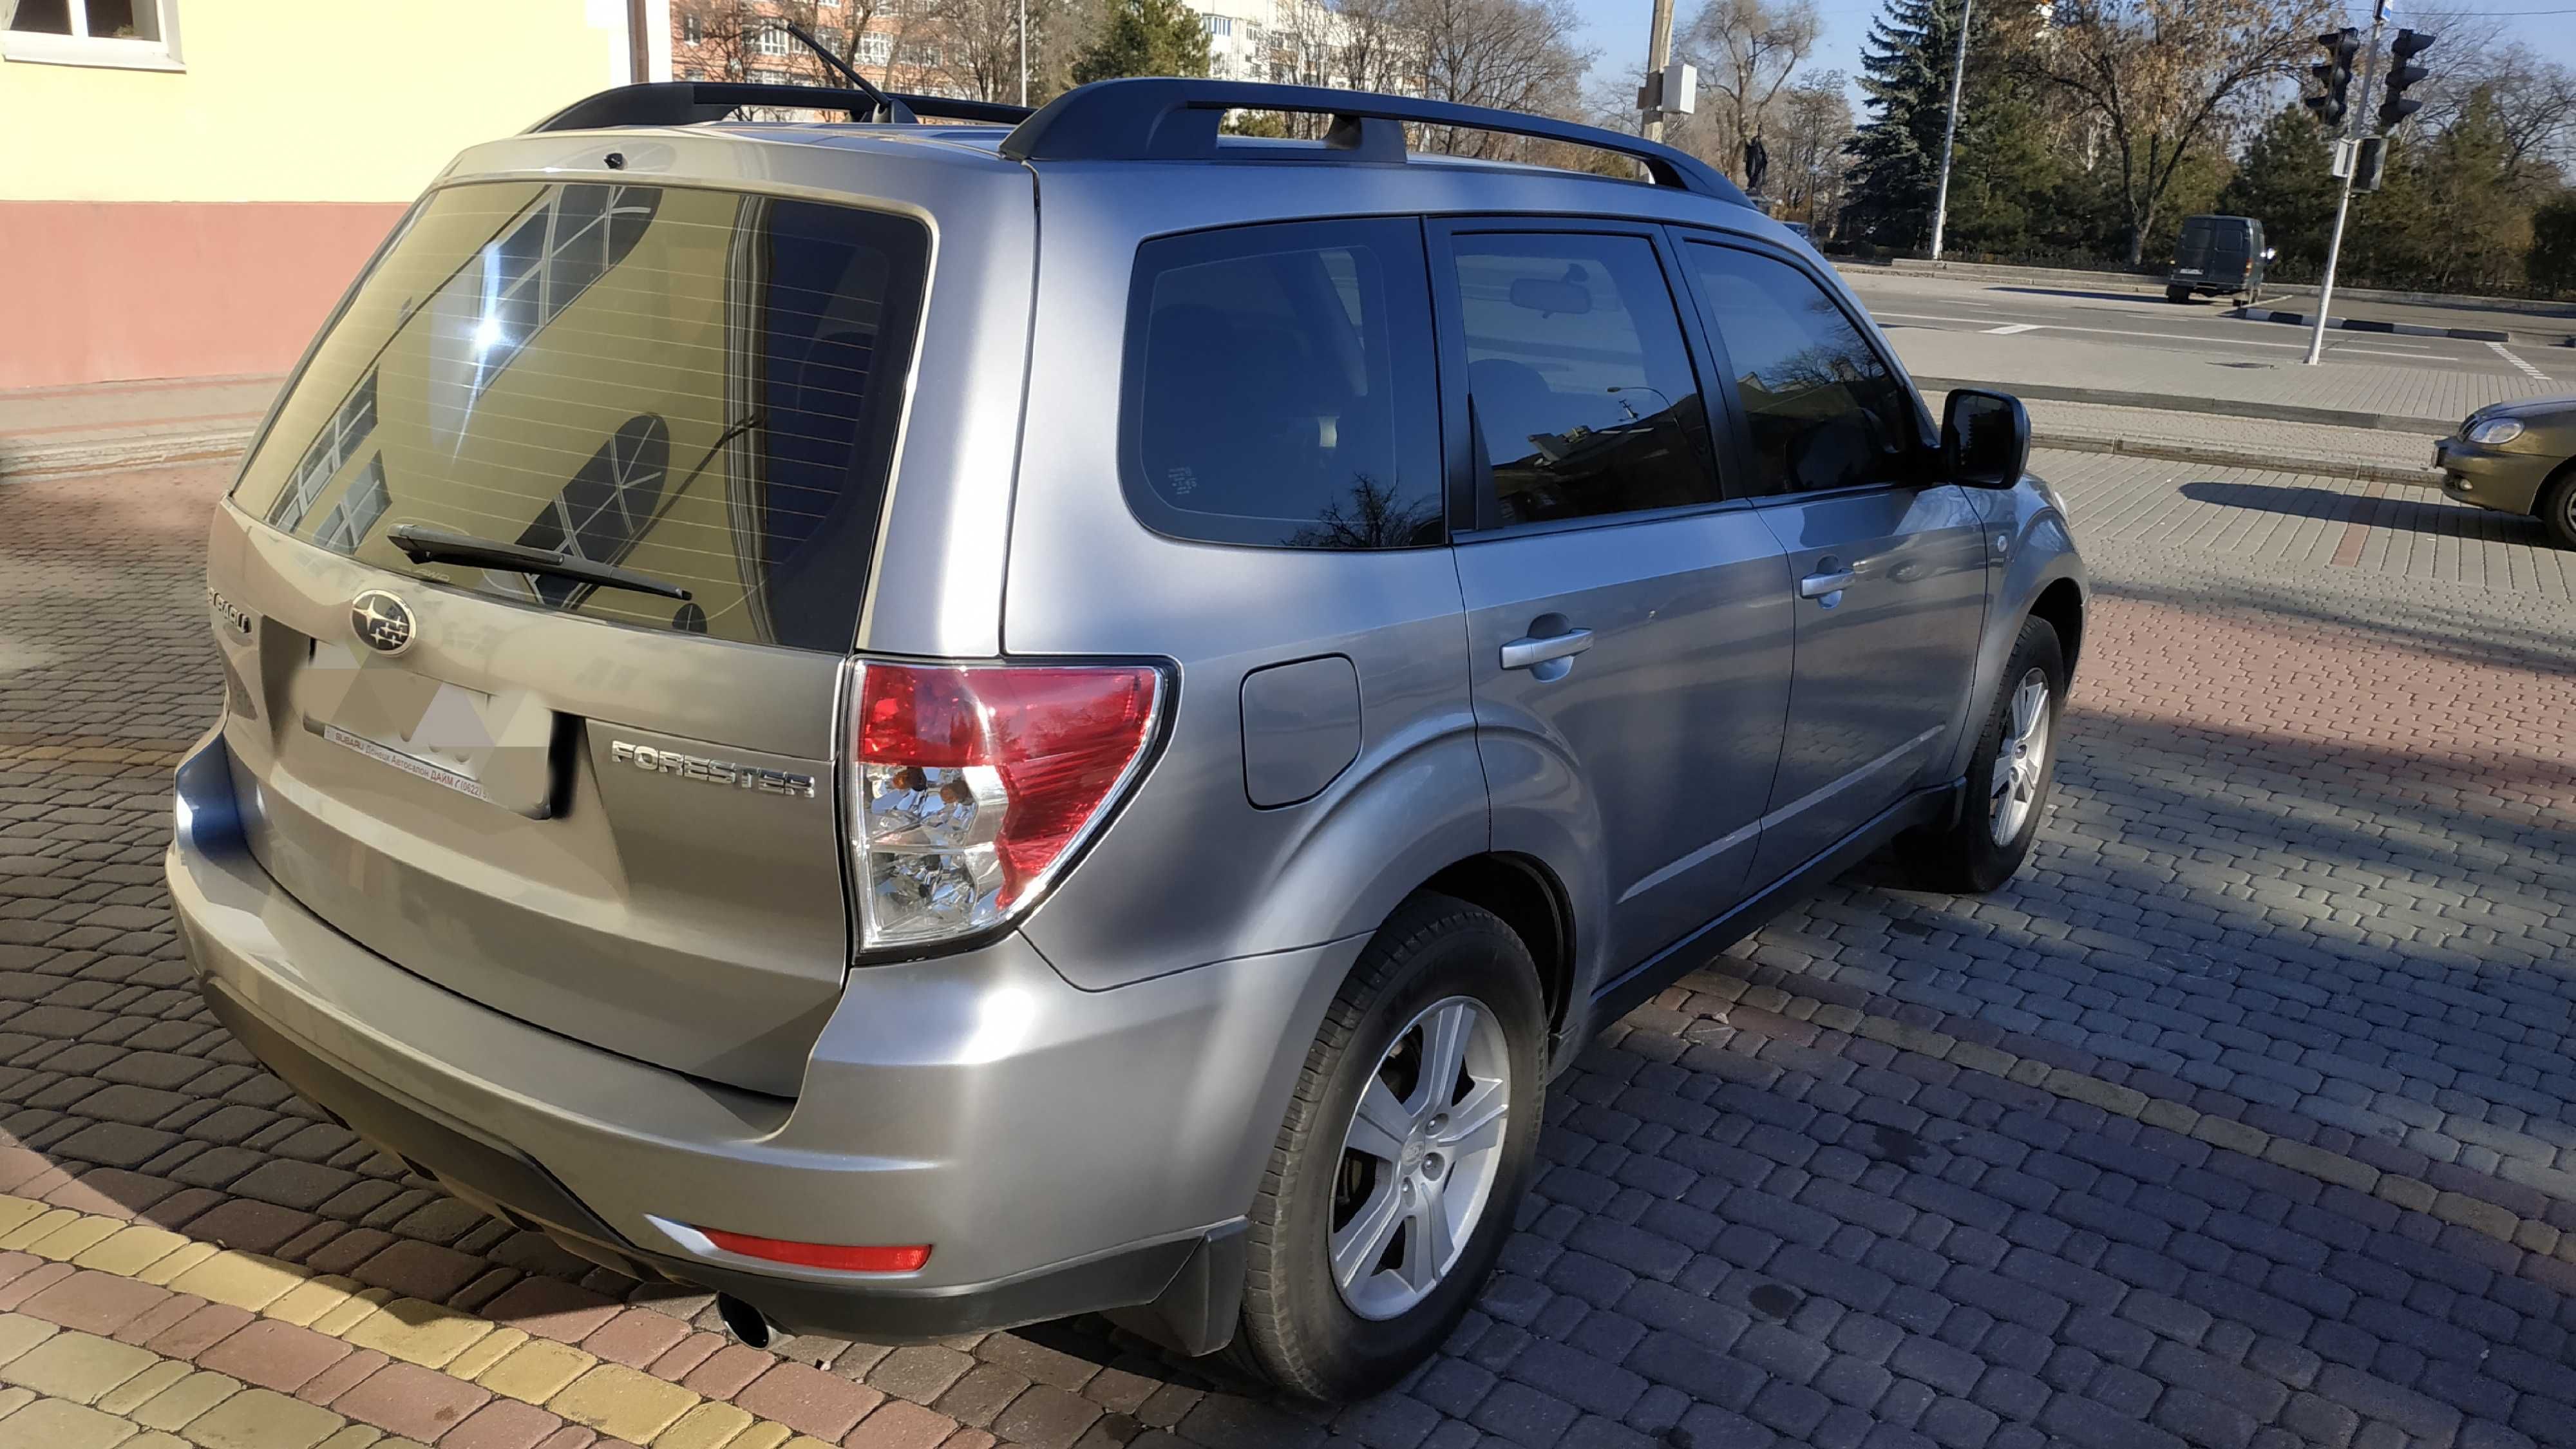 Продам Subaru Forester 2008 года, 2.0 литра, приобреталась новая.